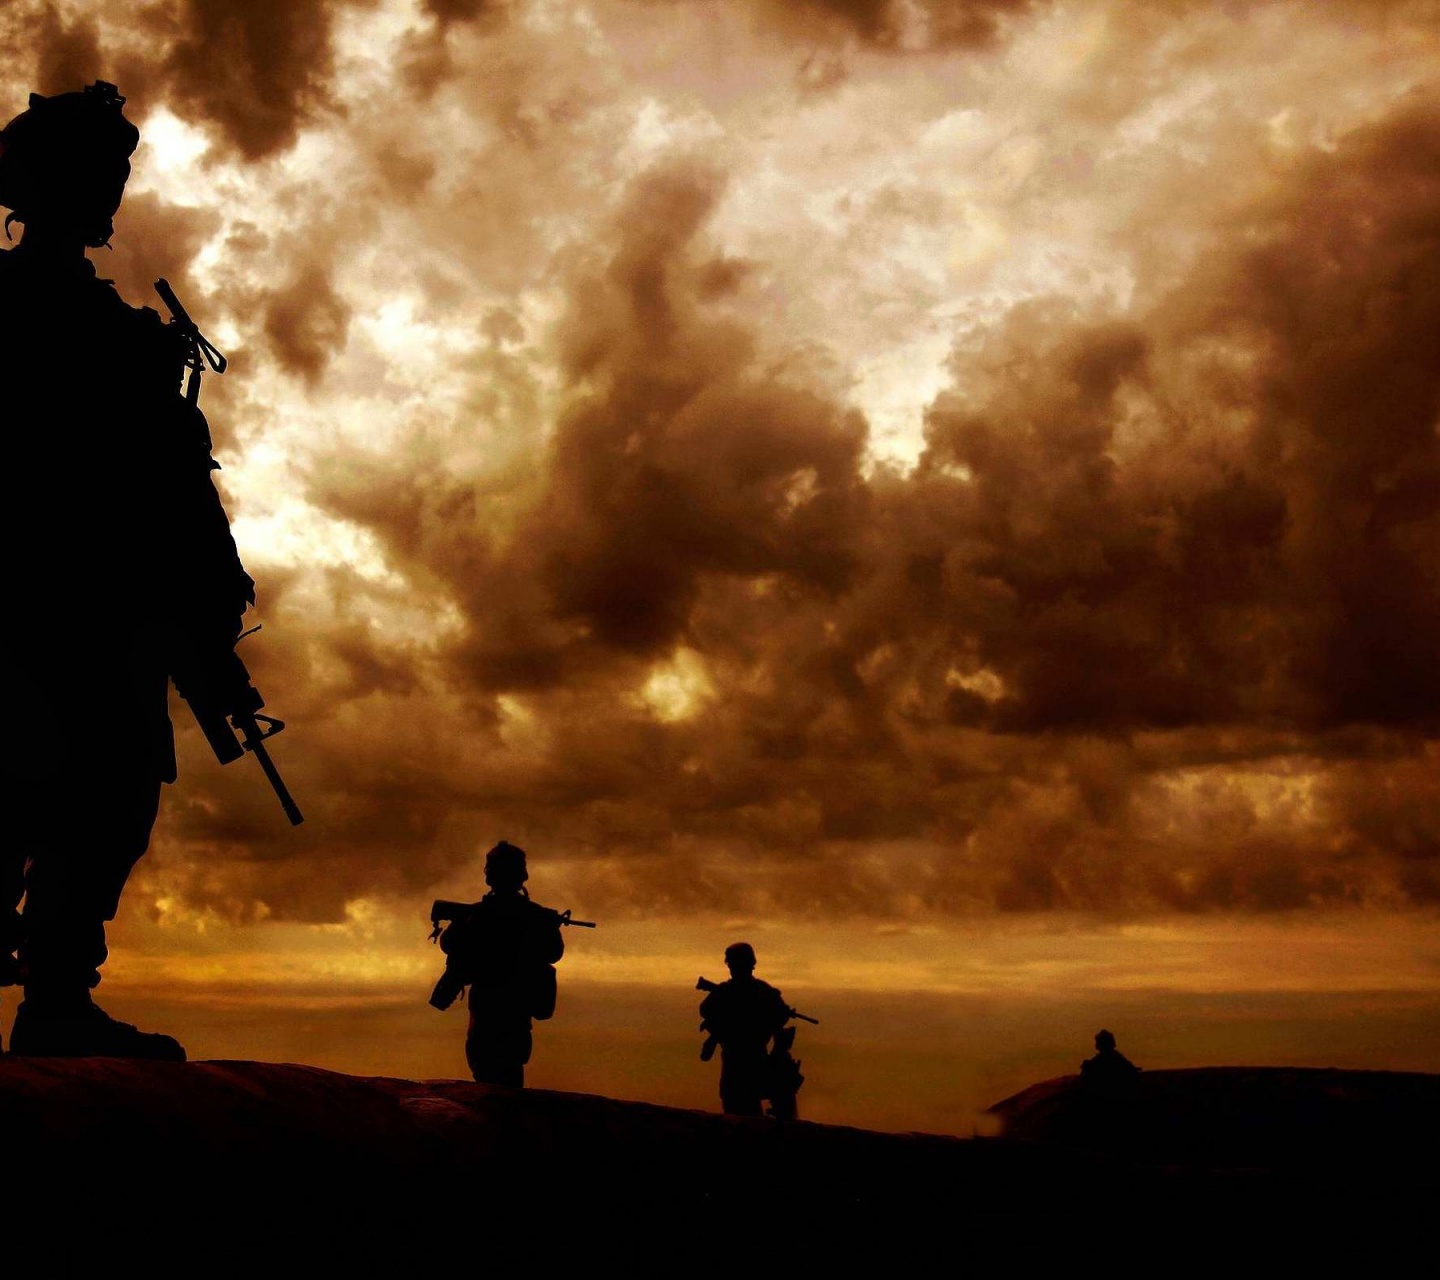 Marines In Afghanistan 2011